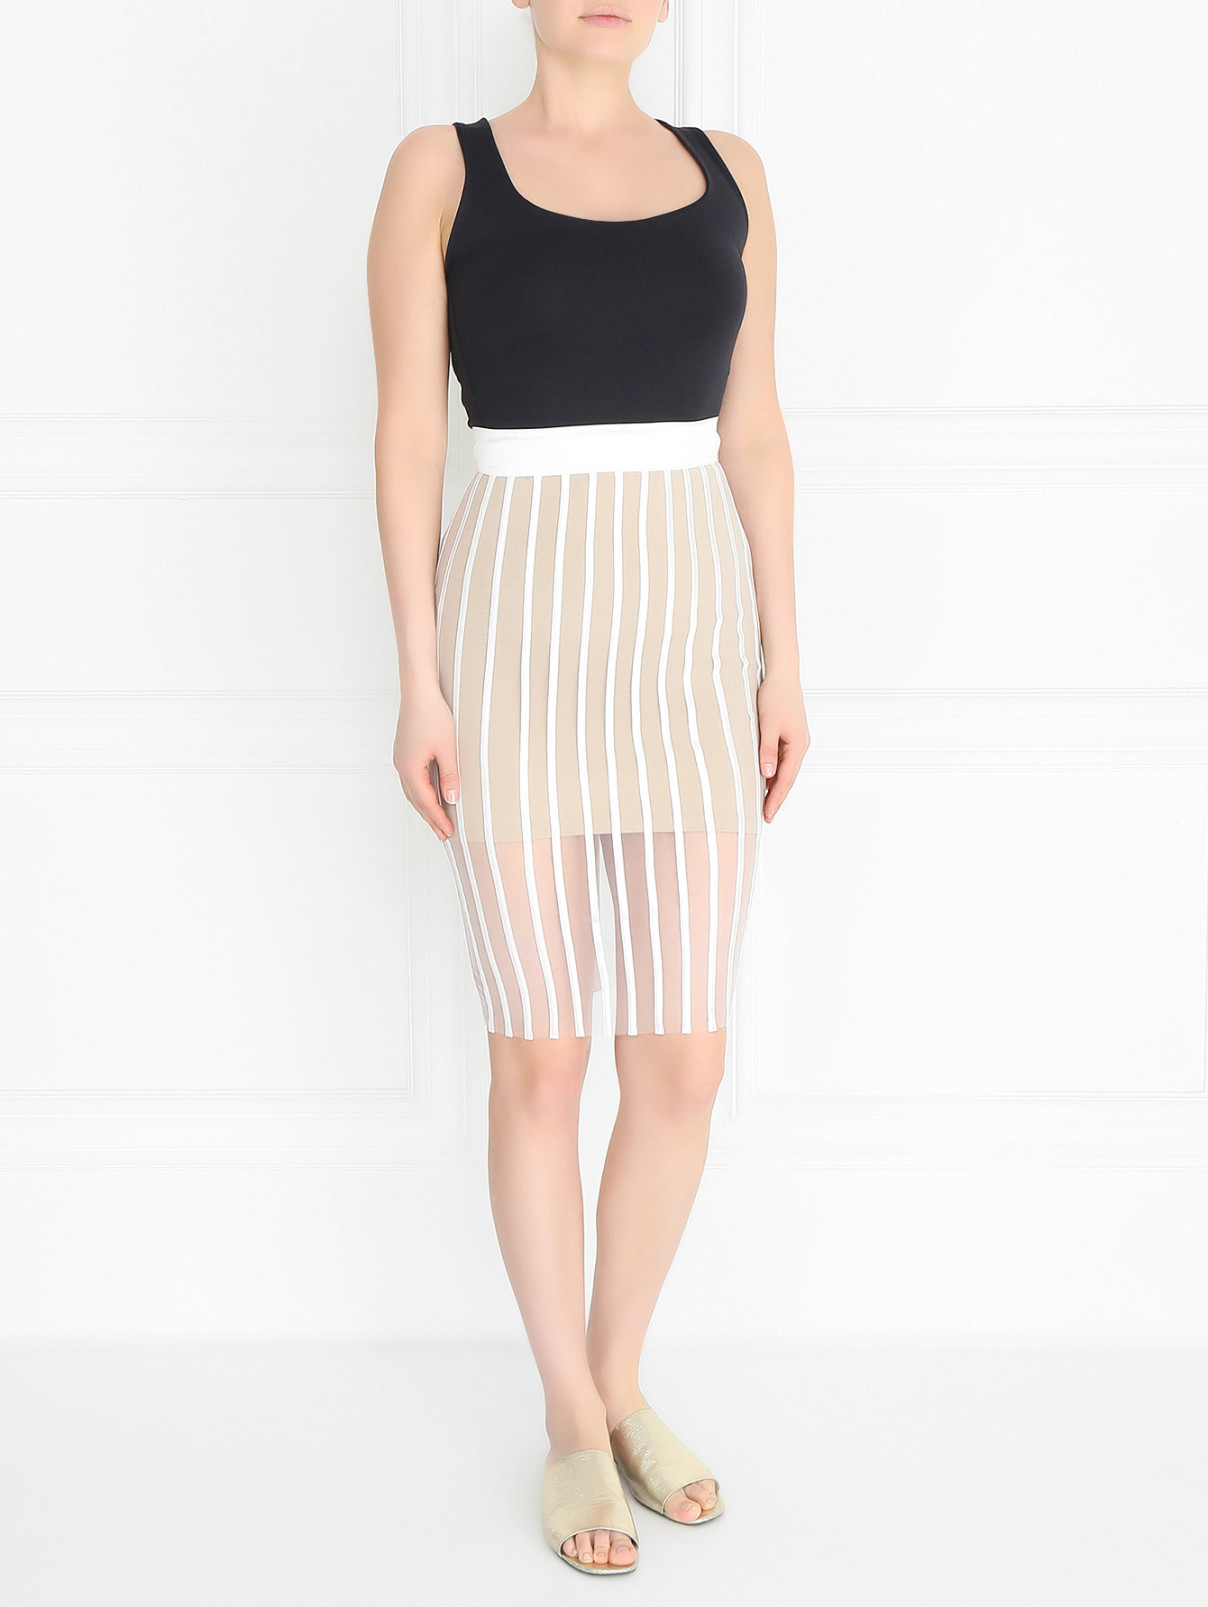 Прозрачная юбка-миди из шелка La Perla  –  Модель Общий вид  – Цвет:  Белый